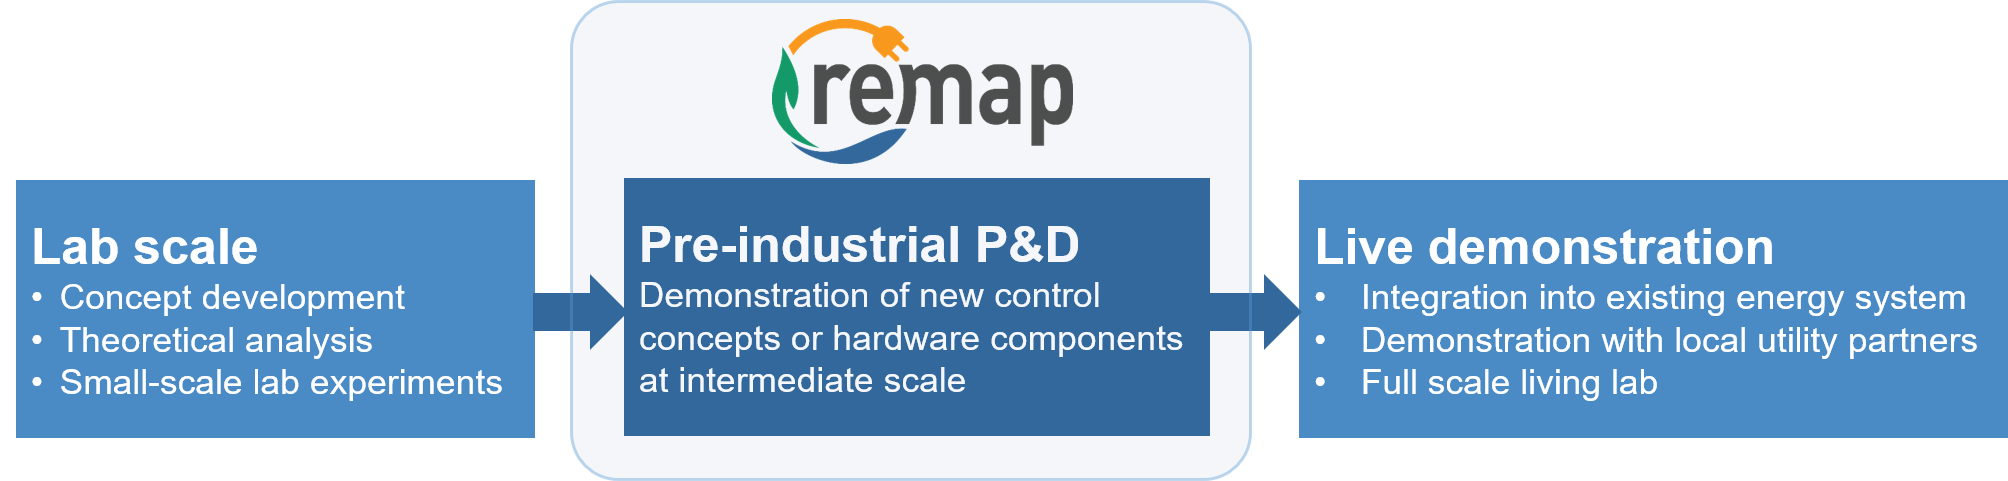 Abbildung: ReMaP Pre-industrial P&D